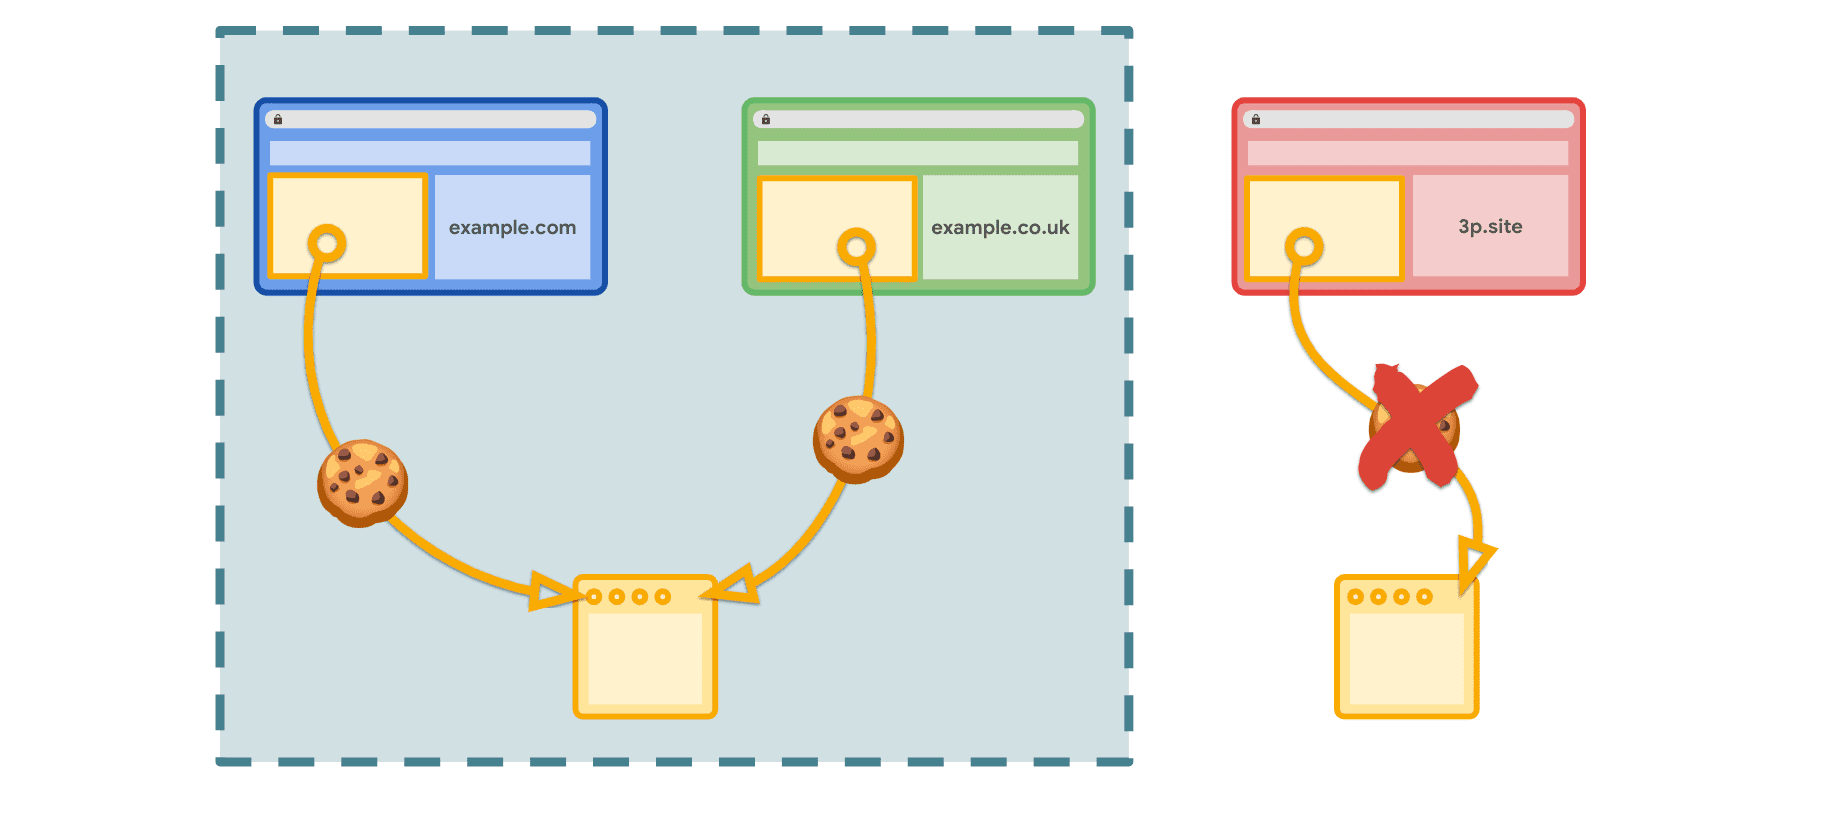 קבוצות של אתרים קשורים מאפשרות גישה לקובצי cookie בהקשר של אתרים שהוצהרו, אבל לא דרך אתרים אחרים של צד שלישי.